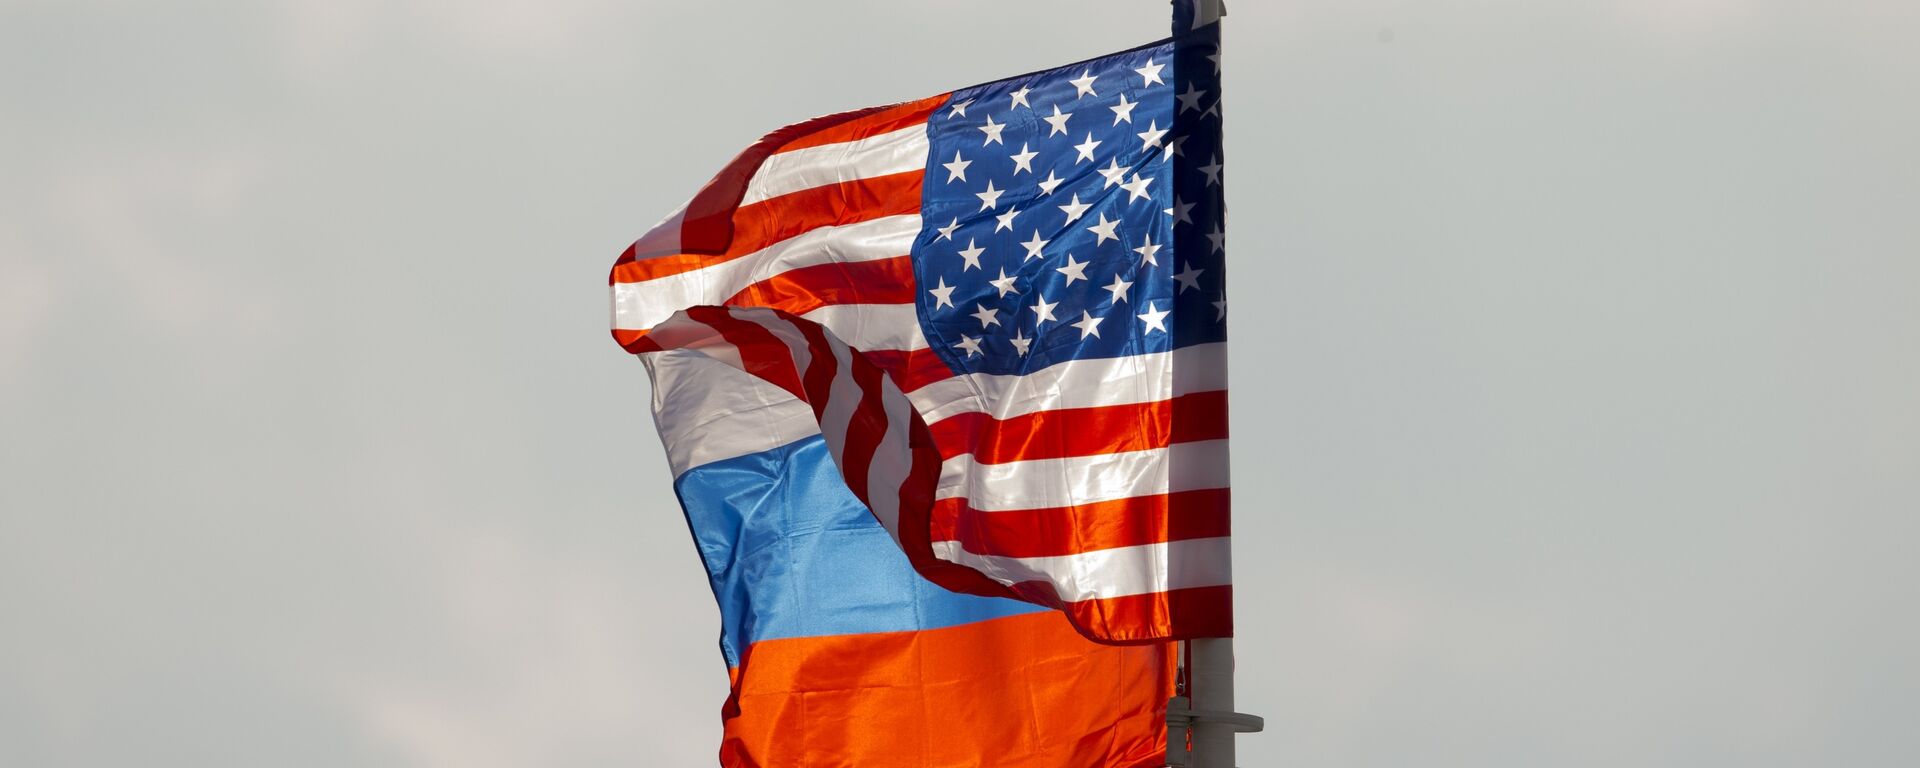 Banderas de Rusia y EEUU (archivo) - Sputnik Mundo, 1920, 16.04.2021